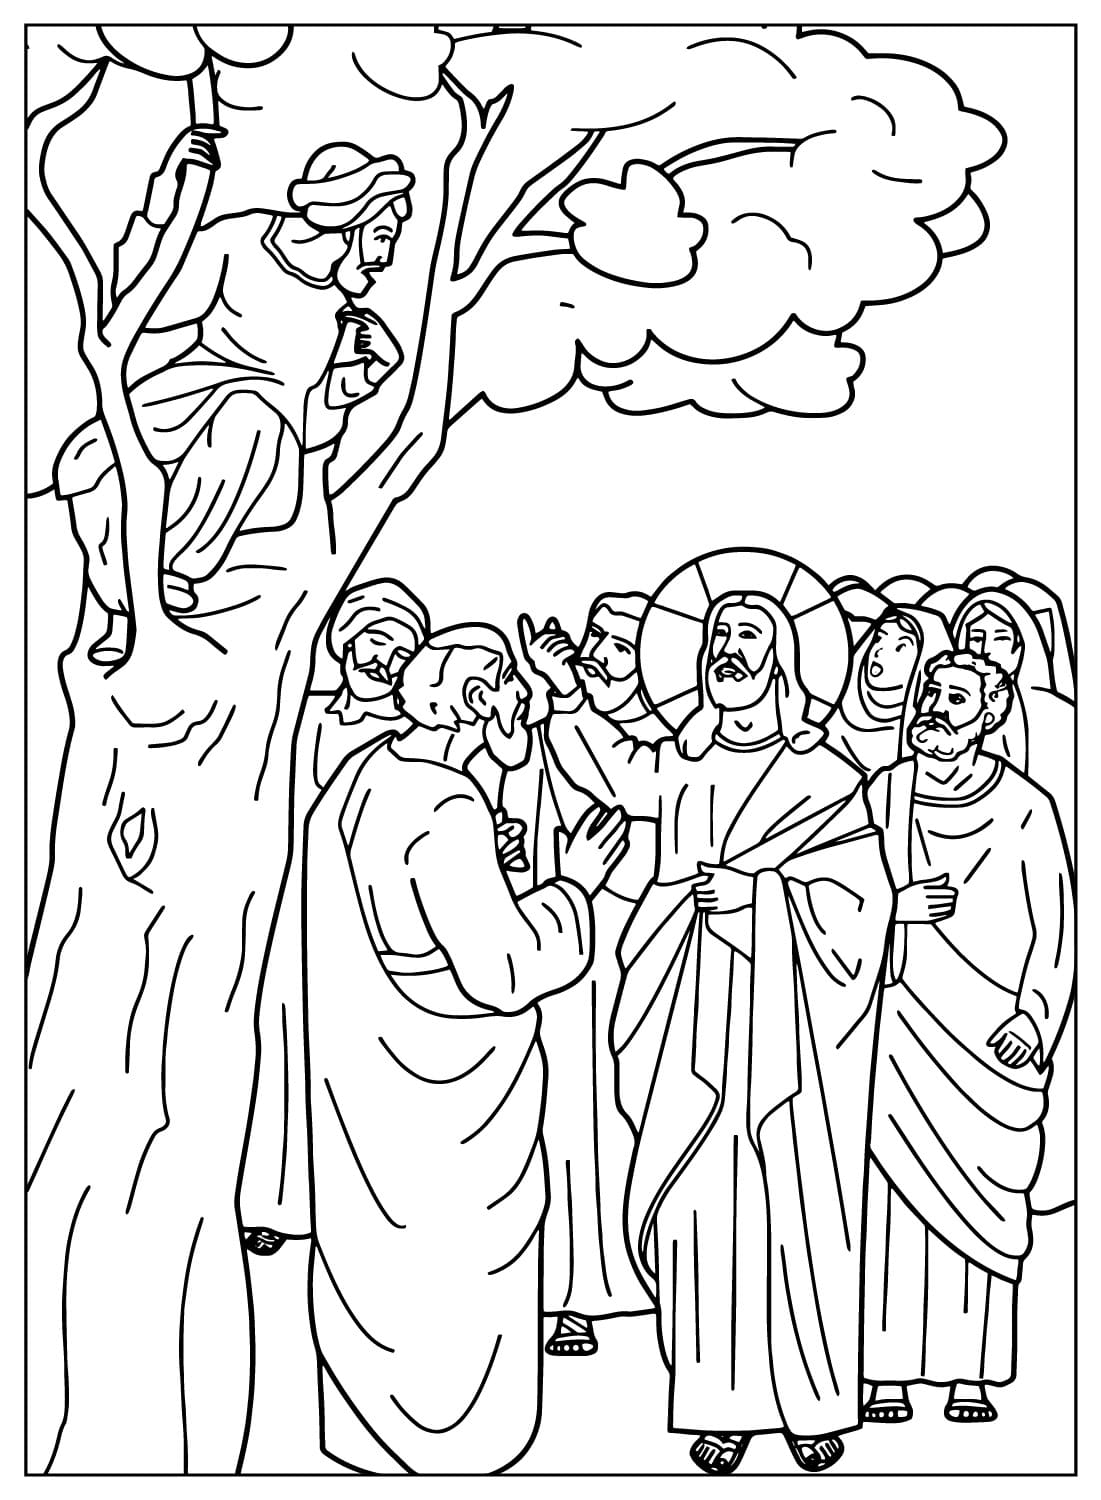 Закхей сидит на дереве, пока Иисус разговаривает с ним